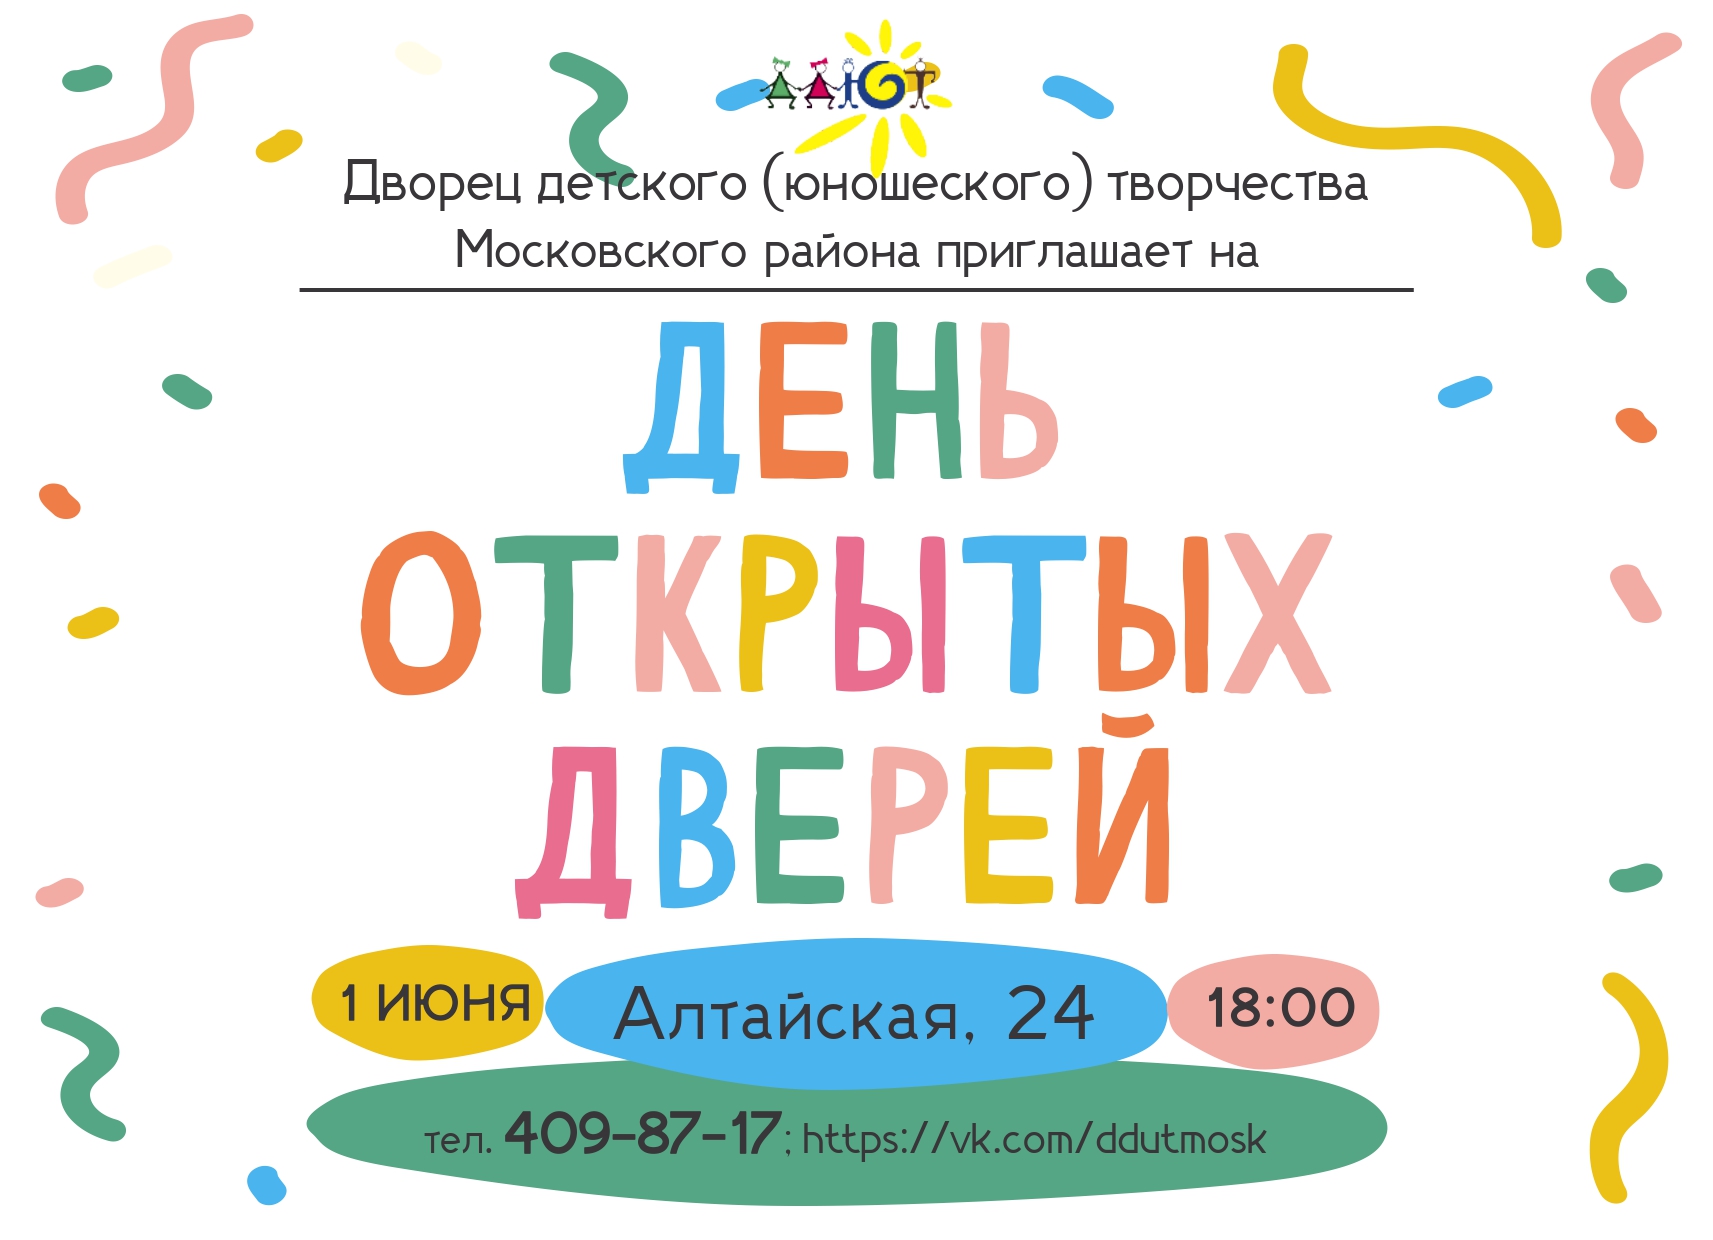 1 июня - День открытых дверей во Дворце детского (юношеского) творчества Московского района